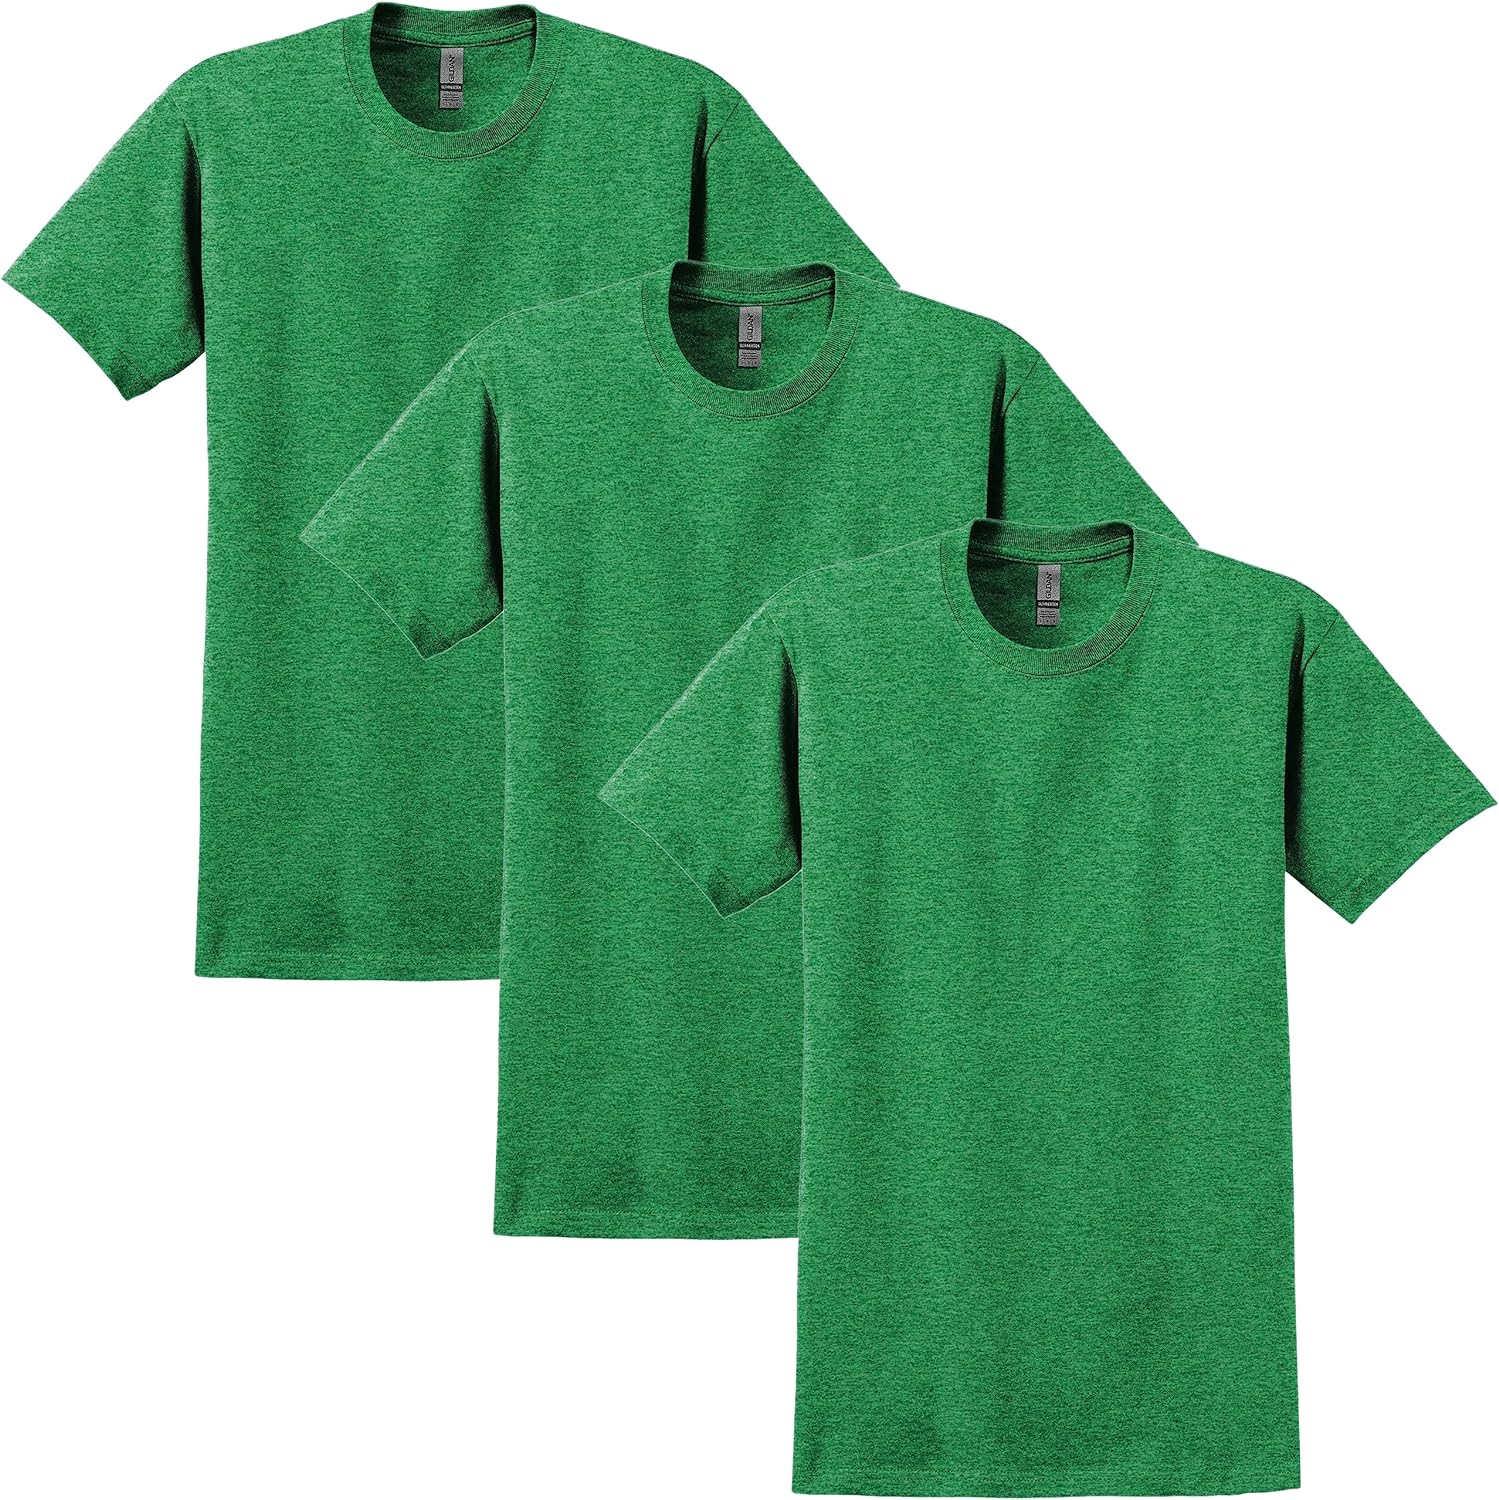 Gildan Adult Ultra Cotton Short Sleeve T-Shirt - Pack of 3